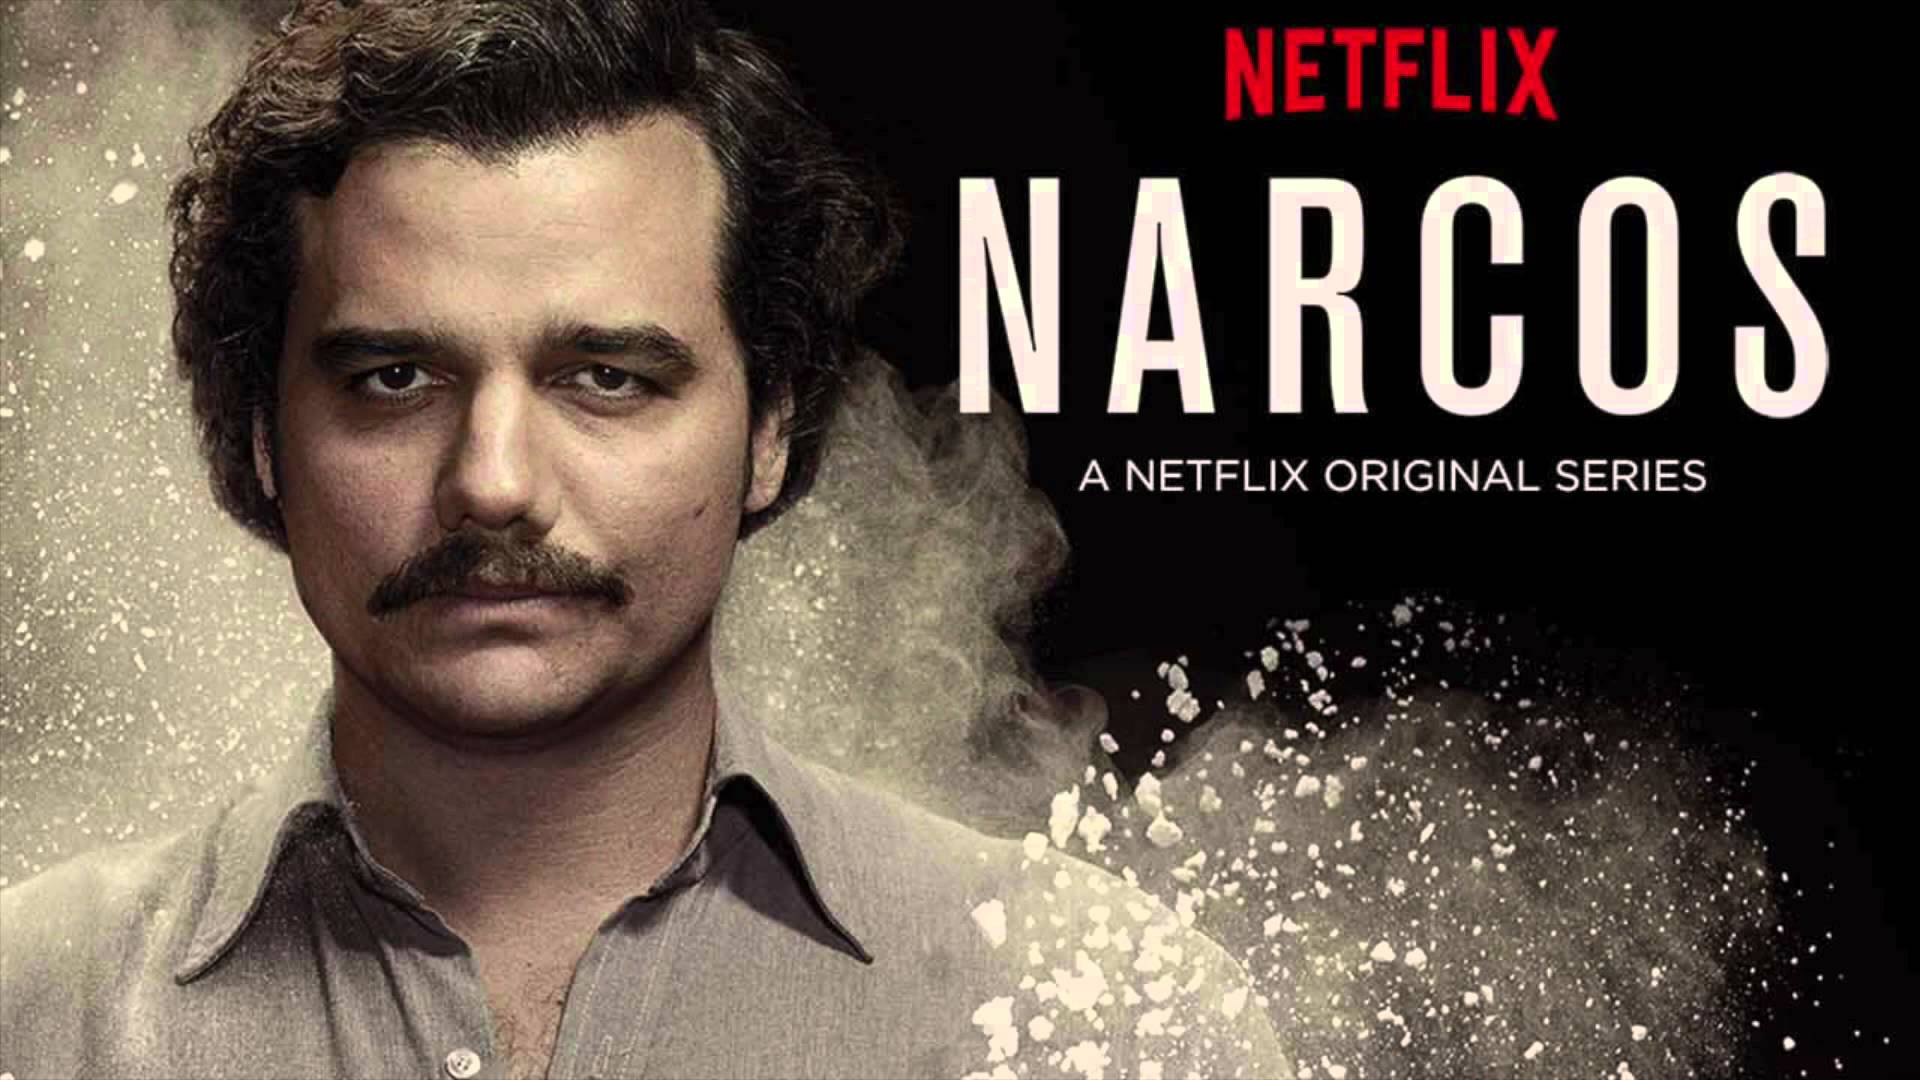 Affichage de la série Narcos sur Netflix.